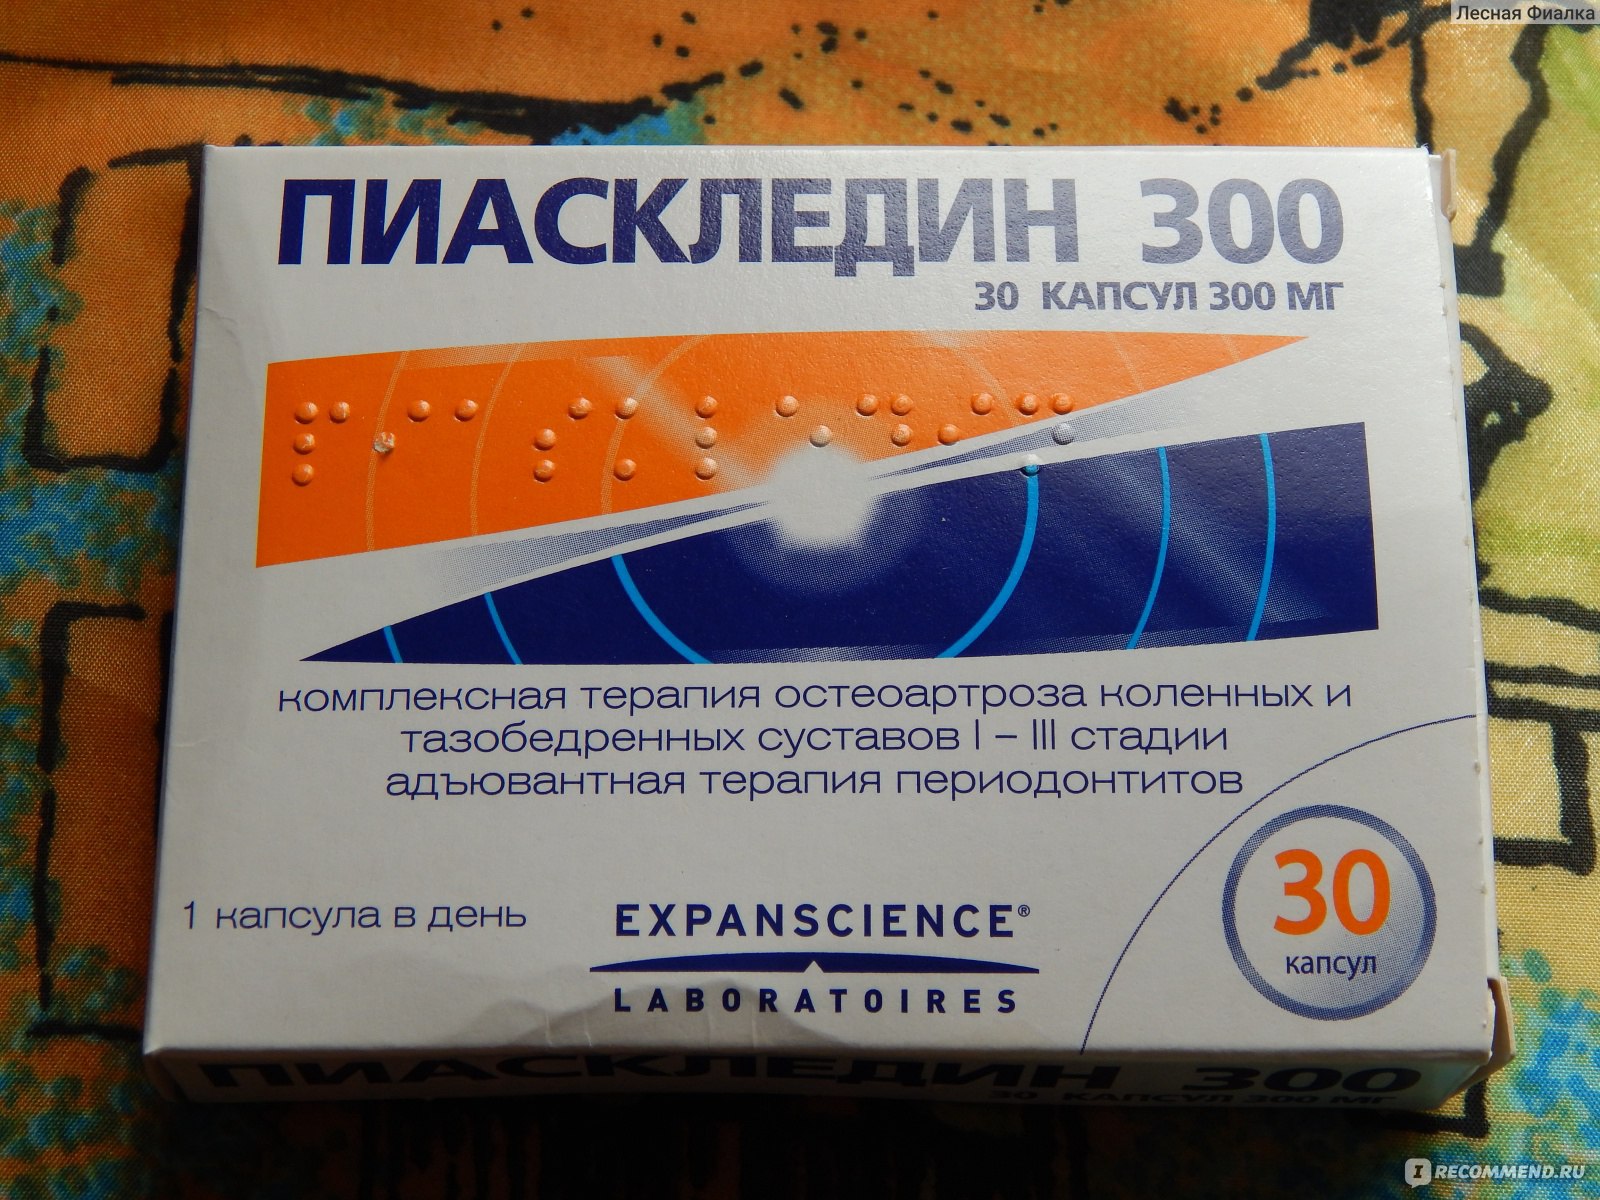 Лекарственный препарат Expanscience Пиаскледин 300 - «Стоит ли ждать .